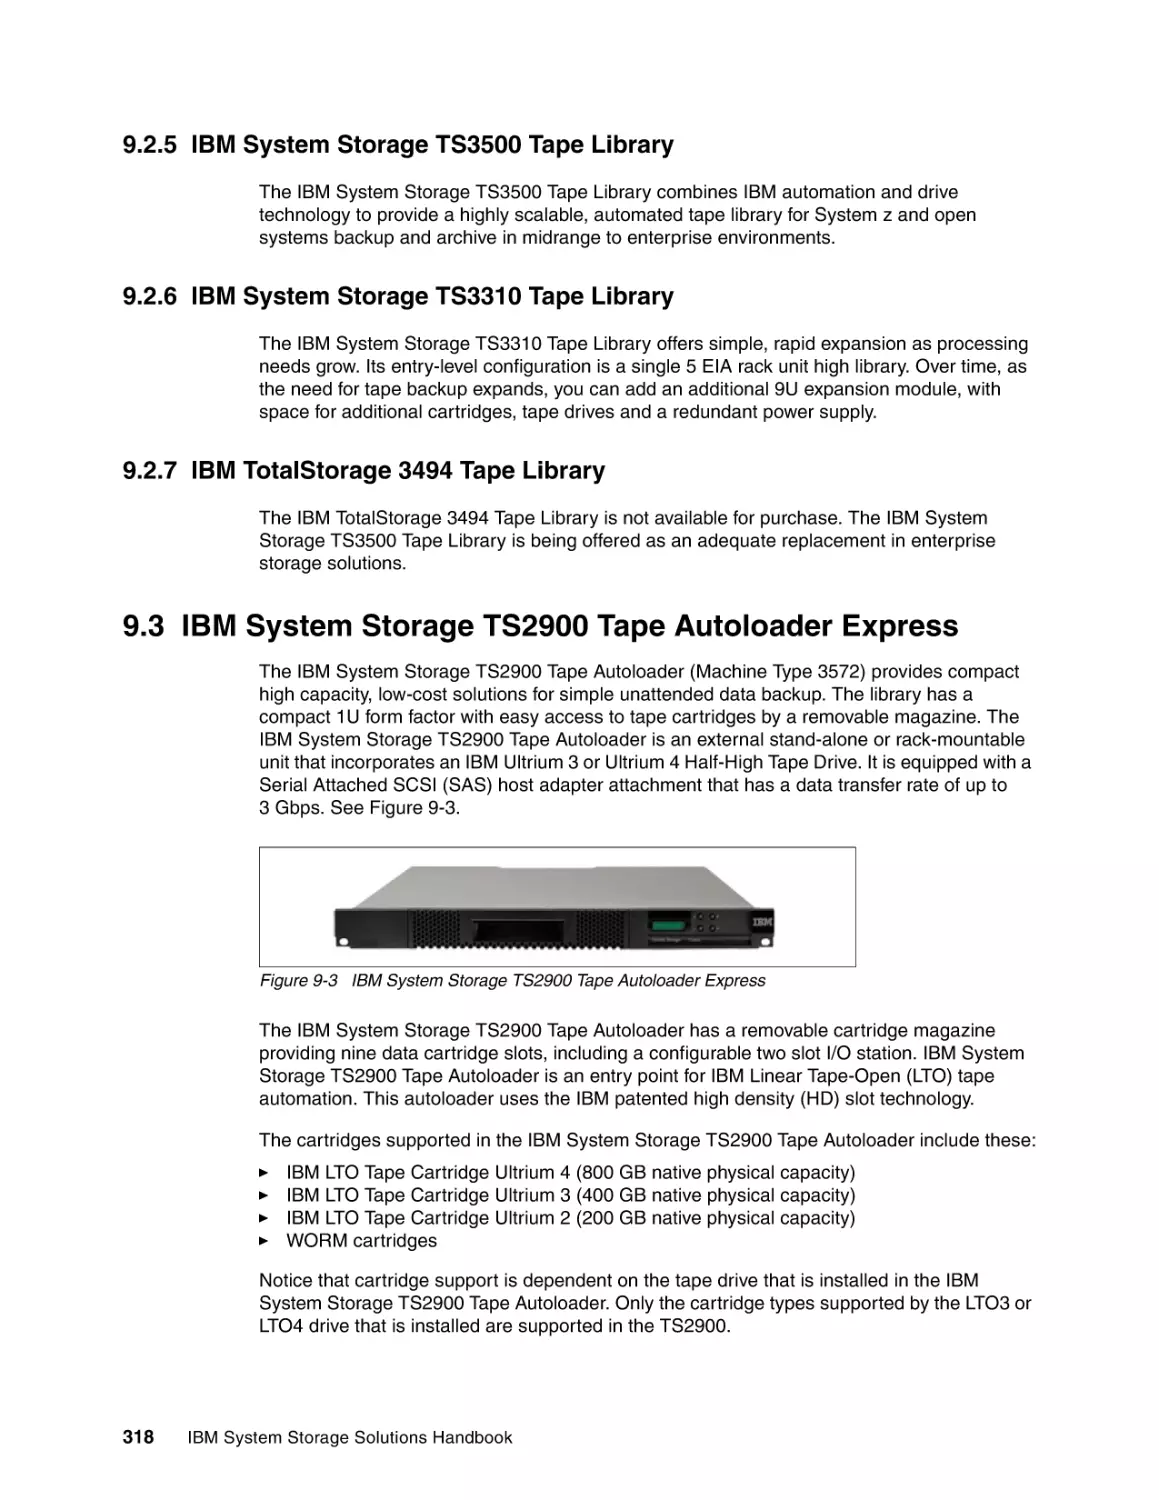 9.2.5 IBM System Storage TS3500 Tape Library
9.2.6 IBM System Storage TS3310 Tape Library
9.2.7 IBM TotalStorage 3494 Tape Library
9.3 IBM System Storage TS2900 Tape Autoloader Express